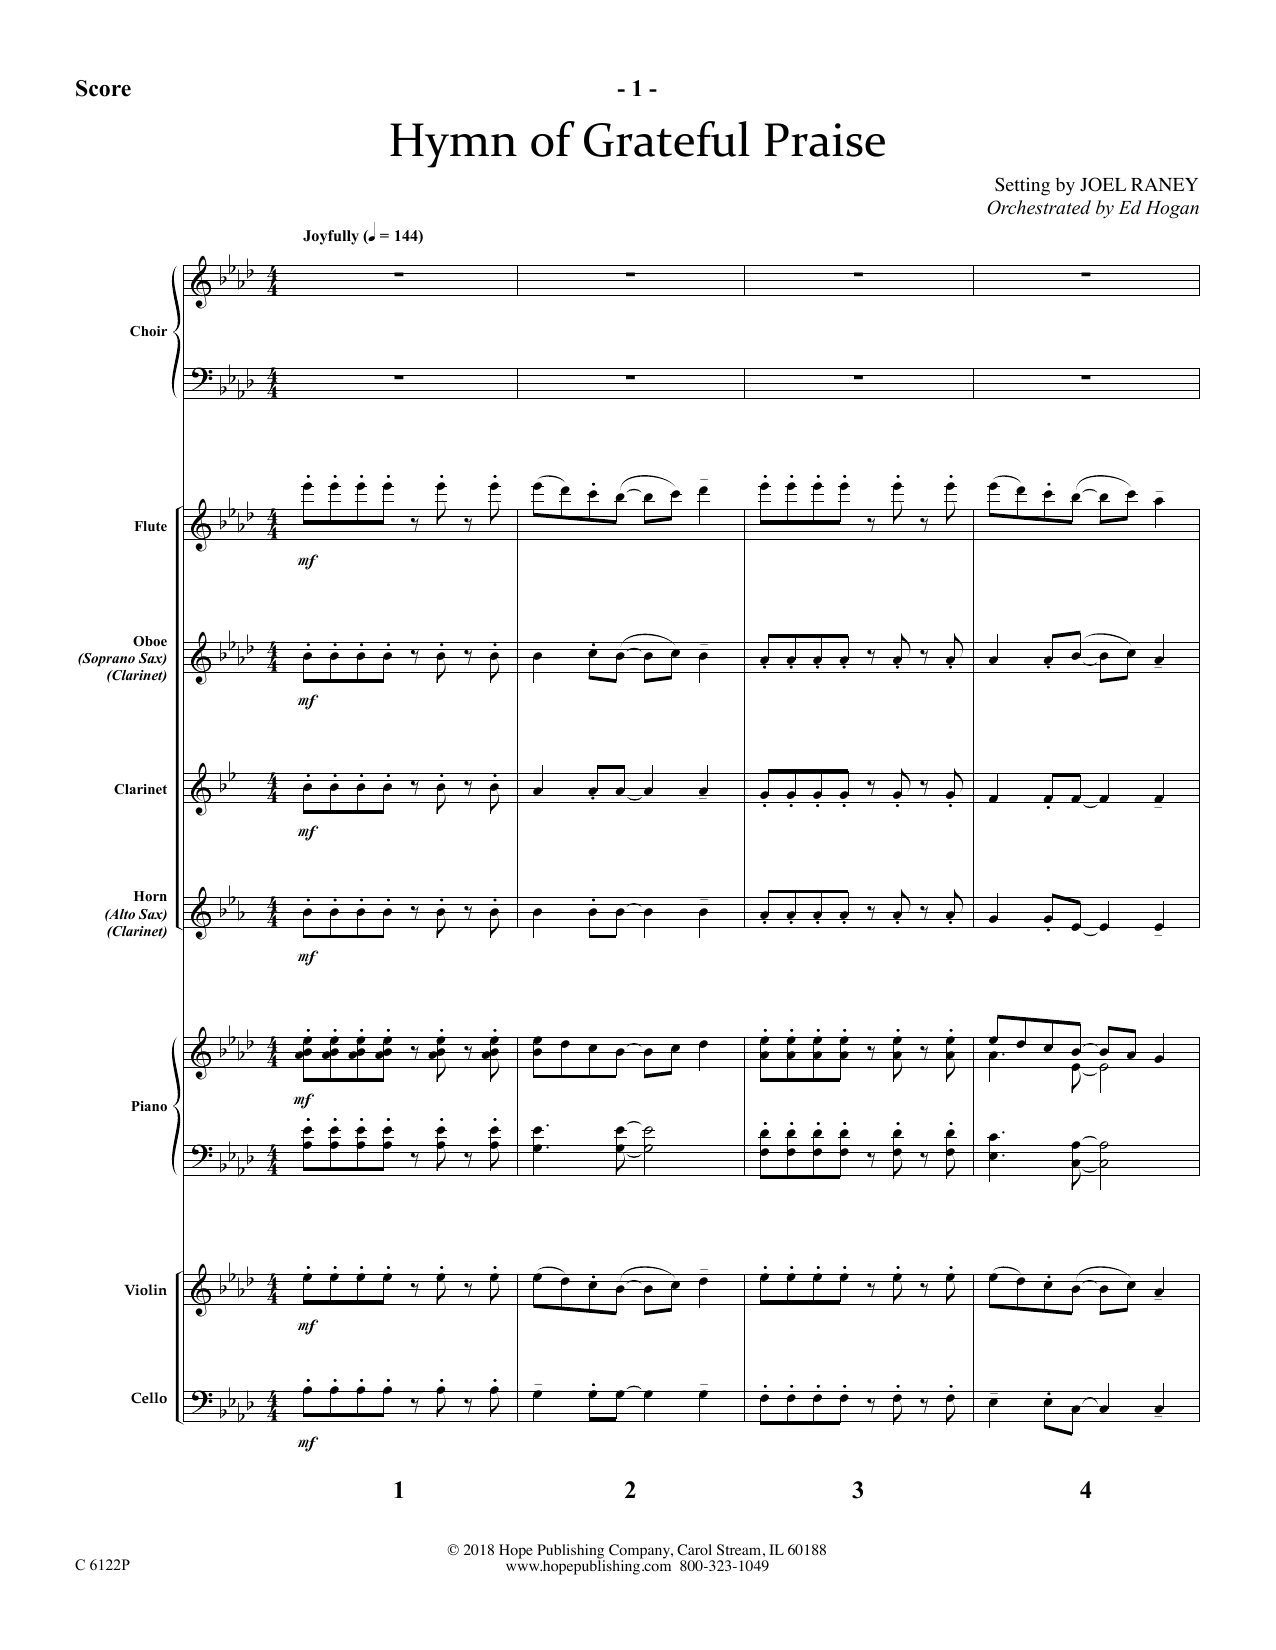 Joel Raney Hymn Of Grateful Praise - Full Score Sheet Music Notes & Chords for Choir Instrumental Pak - Download or Print PDF